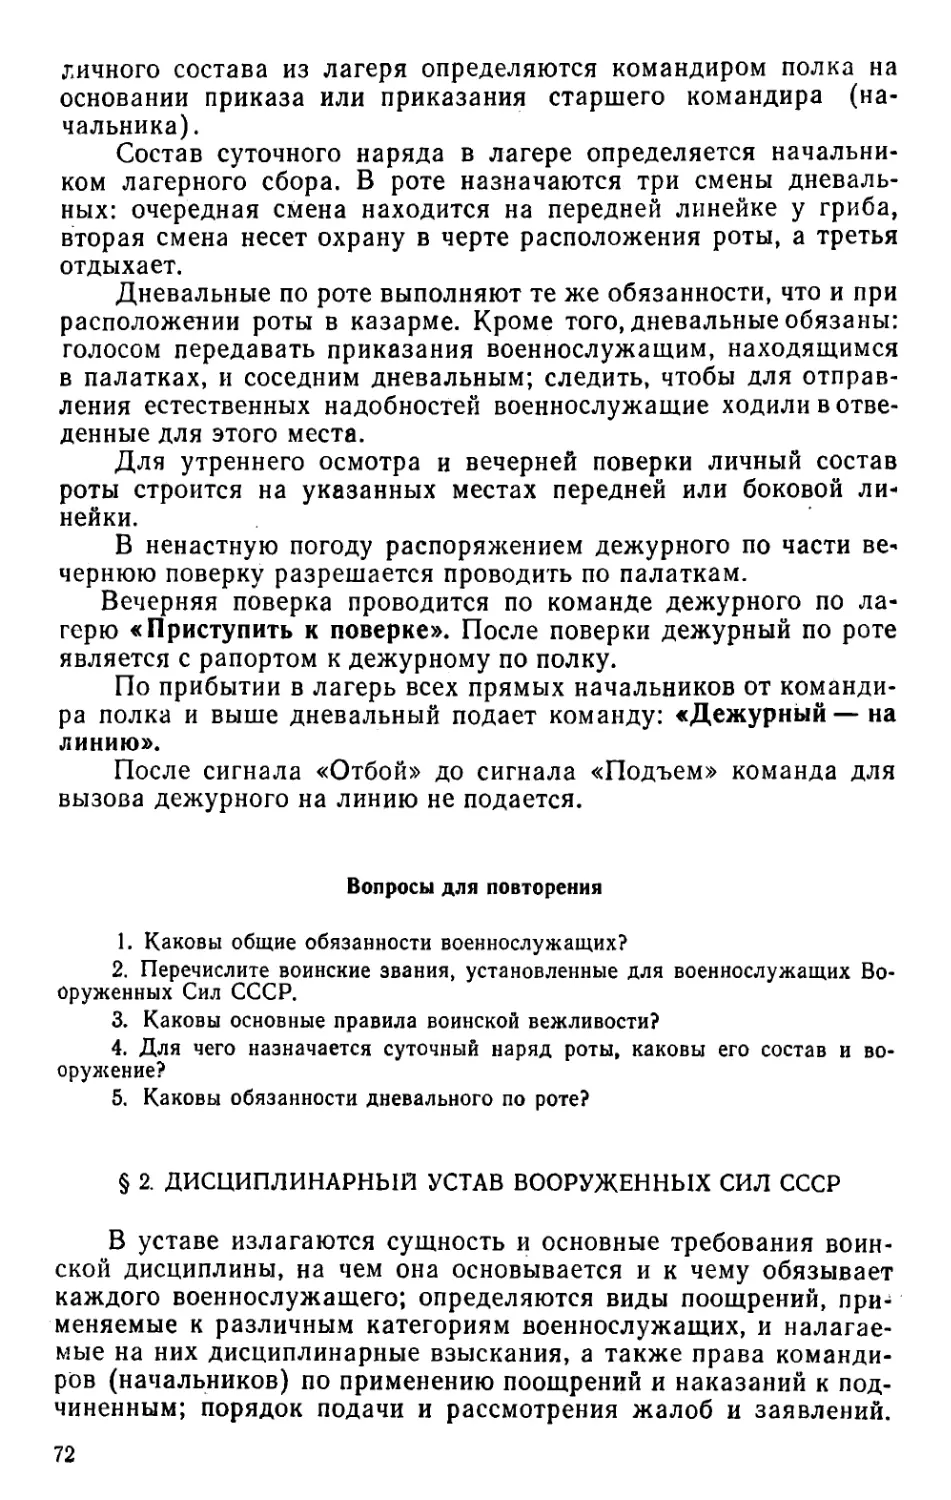 § 2. Дисциплинарный устав Вооруженных Сил СССР